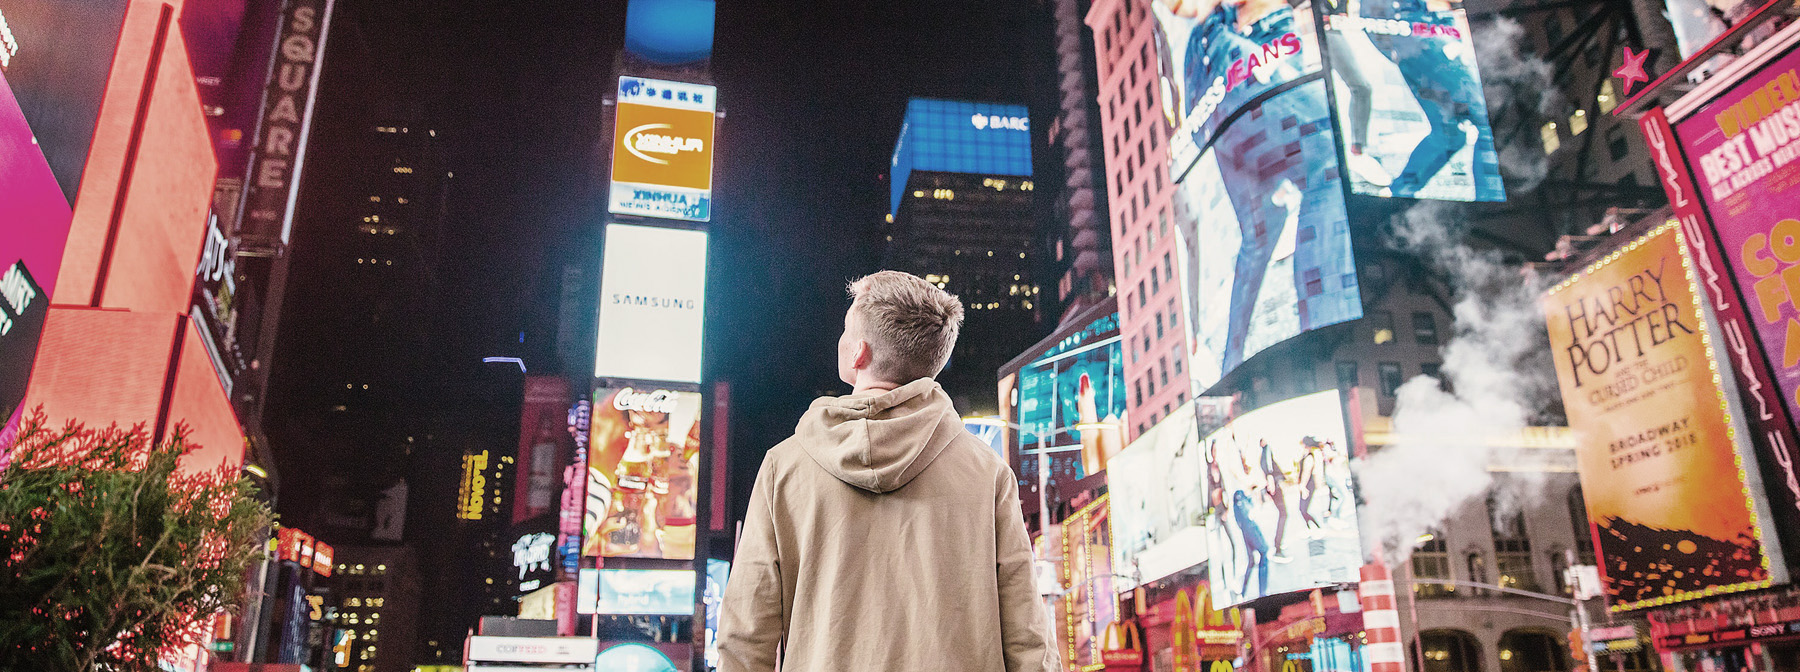 Leuchtreklame und Billboards am Times Square in New York - Symbolbild für visuelle Kommunikation und die Macht der Bilder